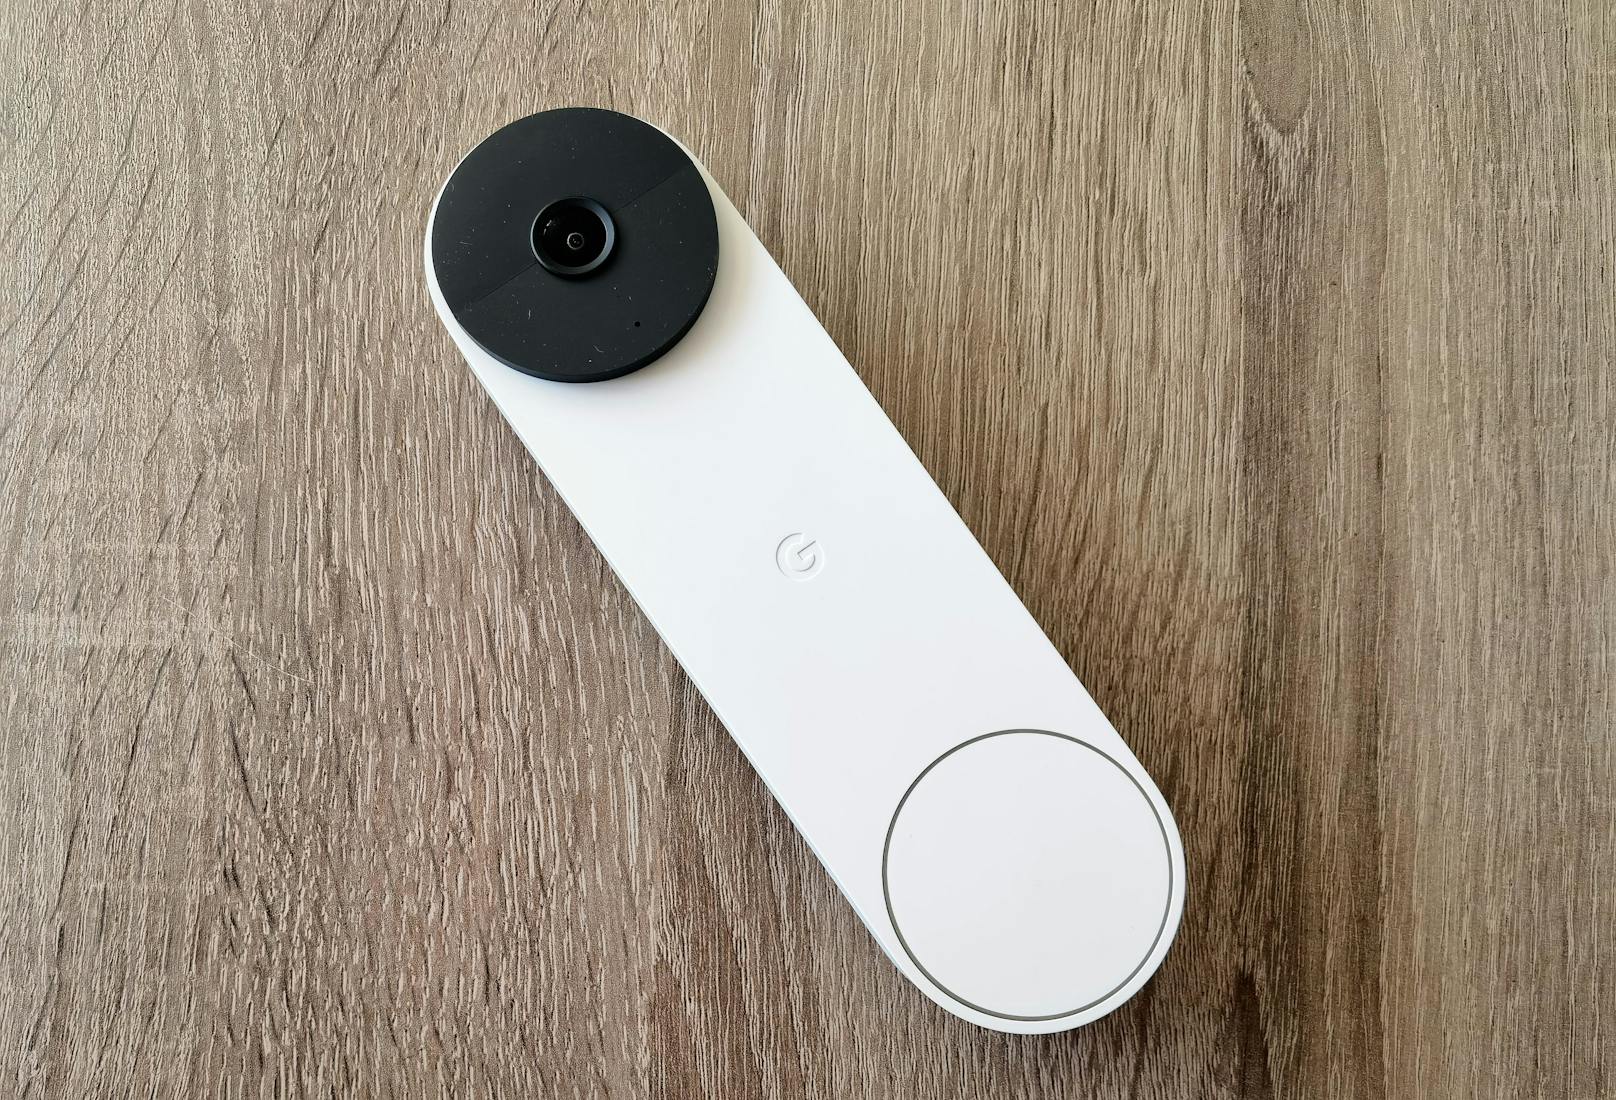 Neu ist bei der Google Nest Doorbell, dass sie nicht nur mit einer Kabelverbindung, sondern auch kabellos mit einem integrierten Akku genutzt werden kann.